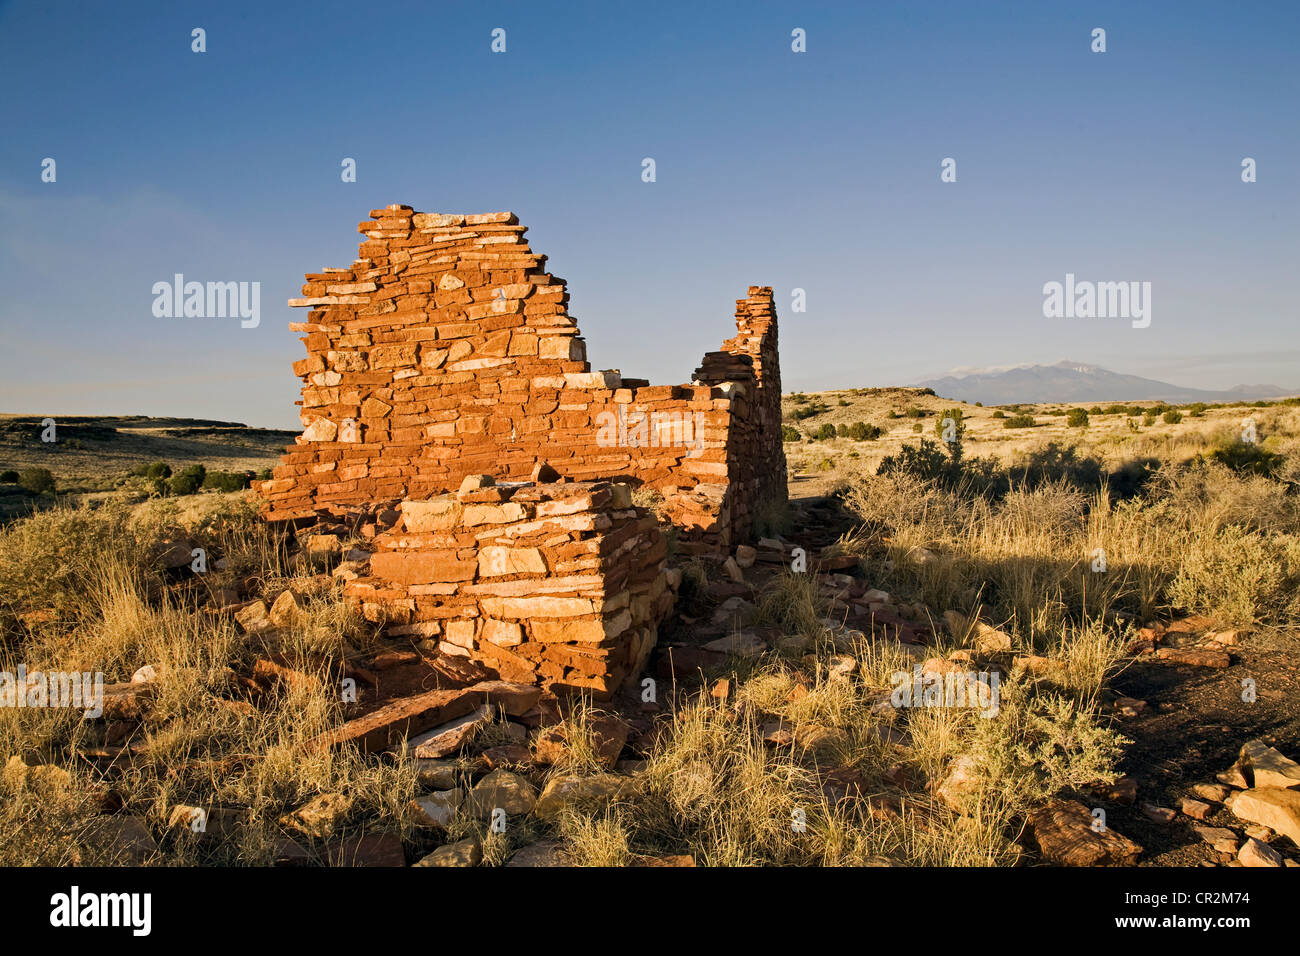 Die Sandsteinwände des Box Canyon Pueblo in den Lomaki-Ruinen im Wupatki National Park, Arizona, direkt unterhalb der San Francisco Peaks. Stockfoto